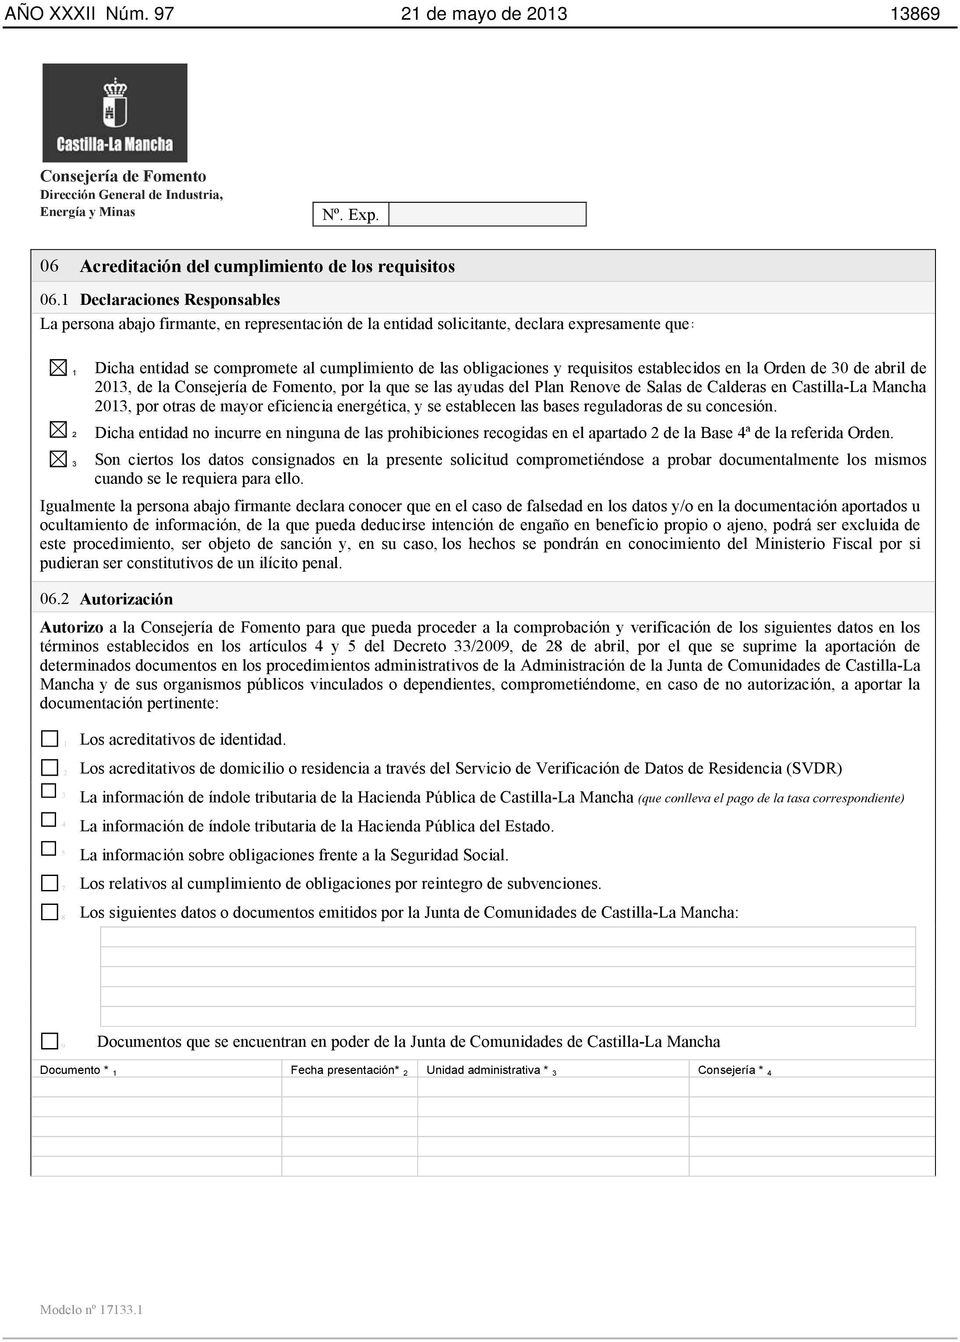 requisitos establecidos en la Orden de 30 de abril de 2013, de la, por la que se las ayudas del Plan Renove de Salas de Calderas en Castilla-La Mancha 2013, por otras de mayor eficiencia energética,